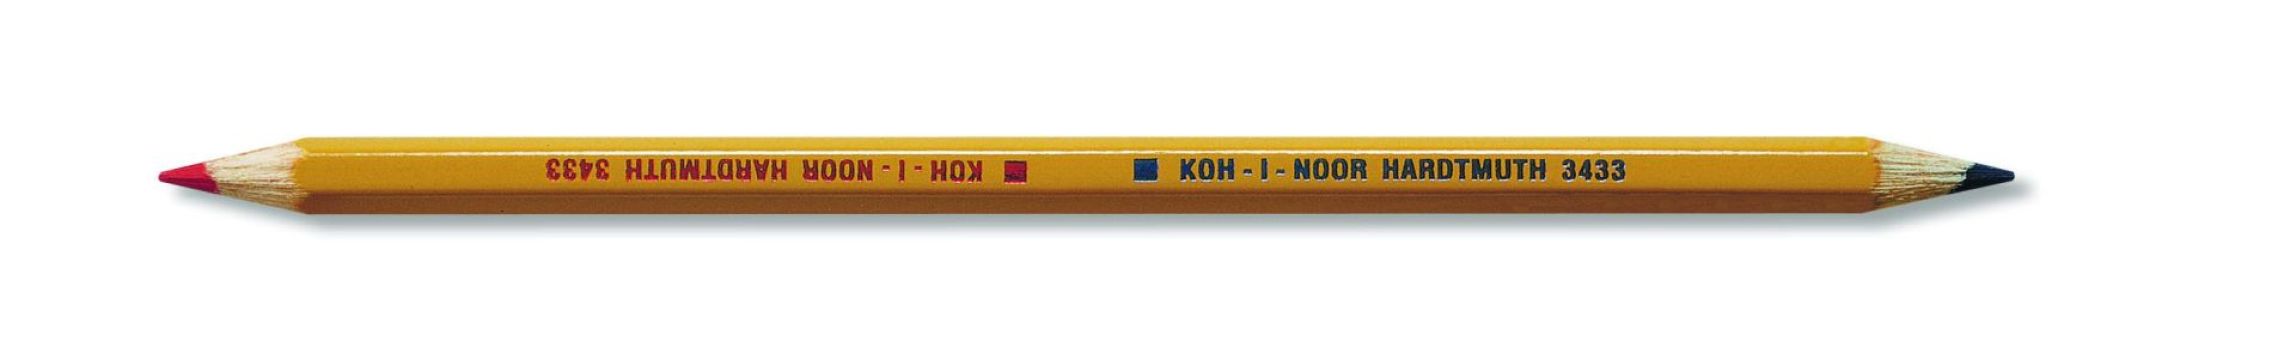 Ceruzka Koh-i-noor 3433 červeno-modrá